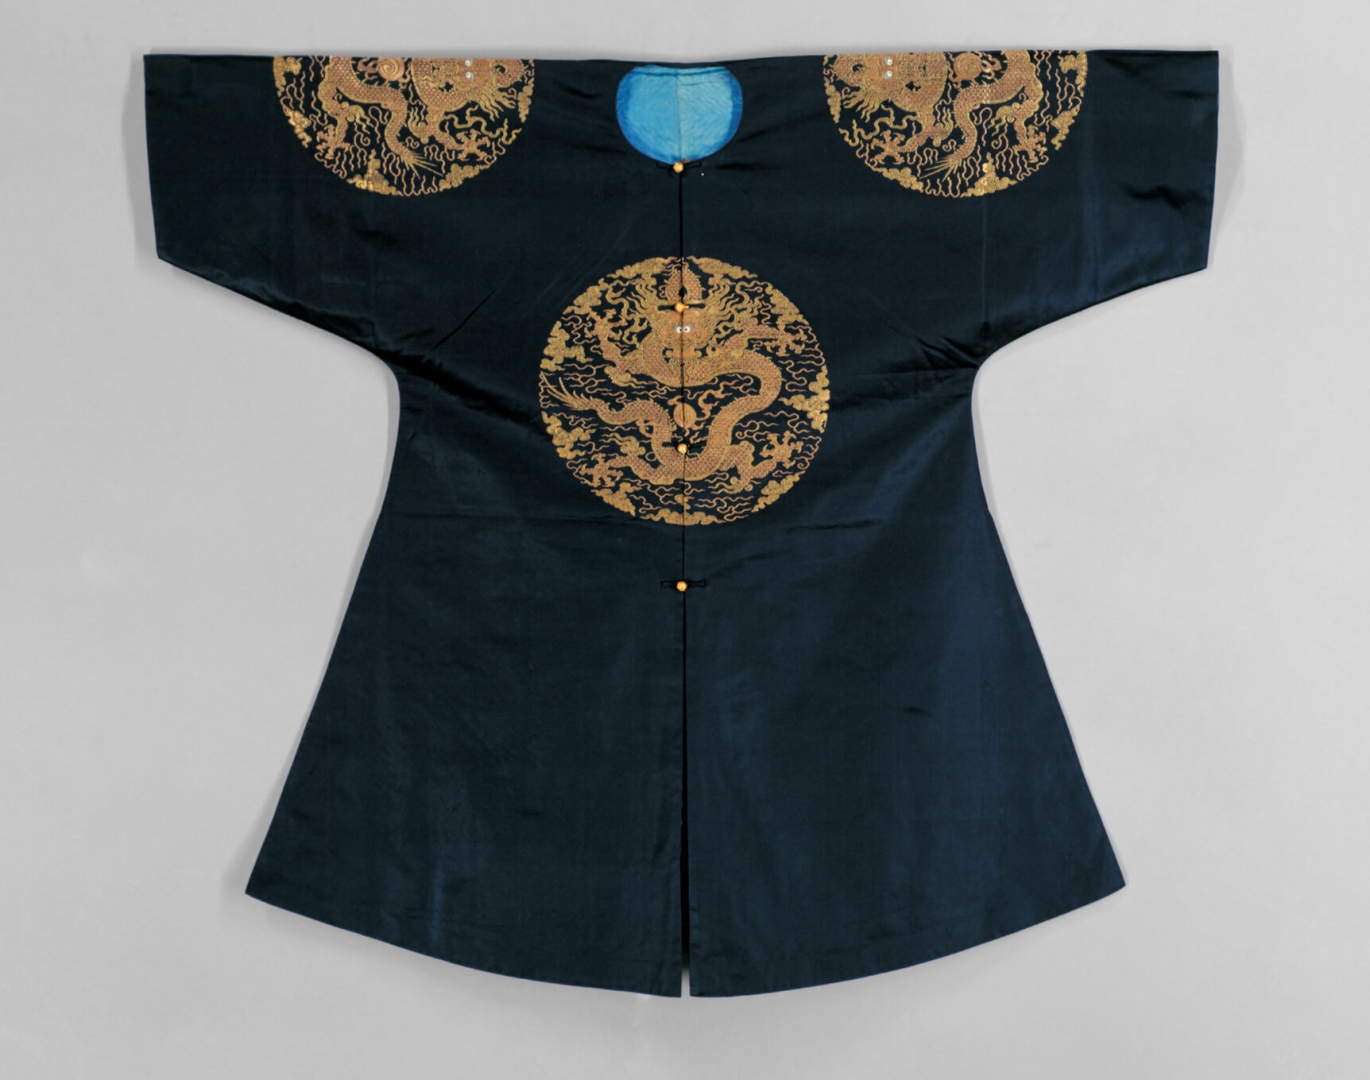 Темно-синий наградной <br />
халат на подкладке с четырьмя <br />
золототканными орнаментами <br />
с изображением свернувшегося <br />
дракона